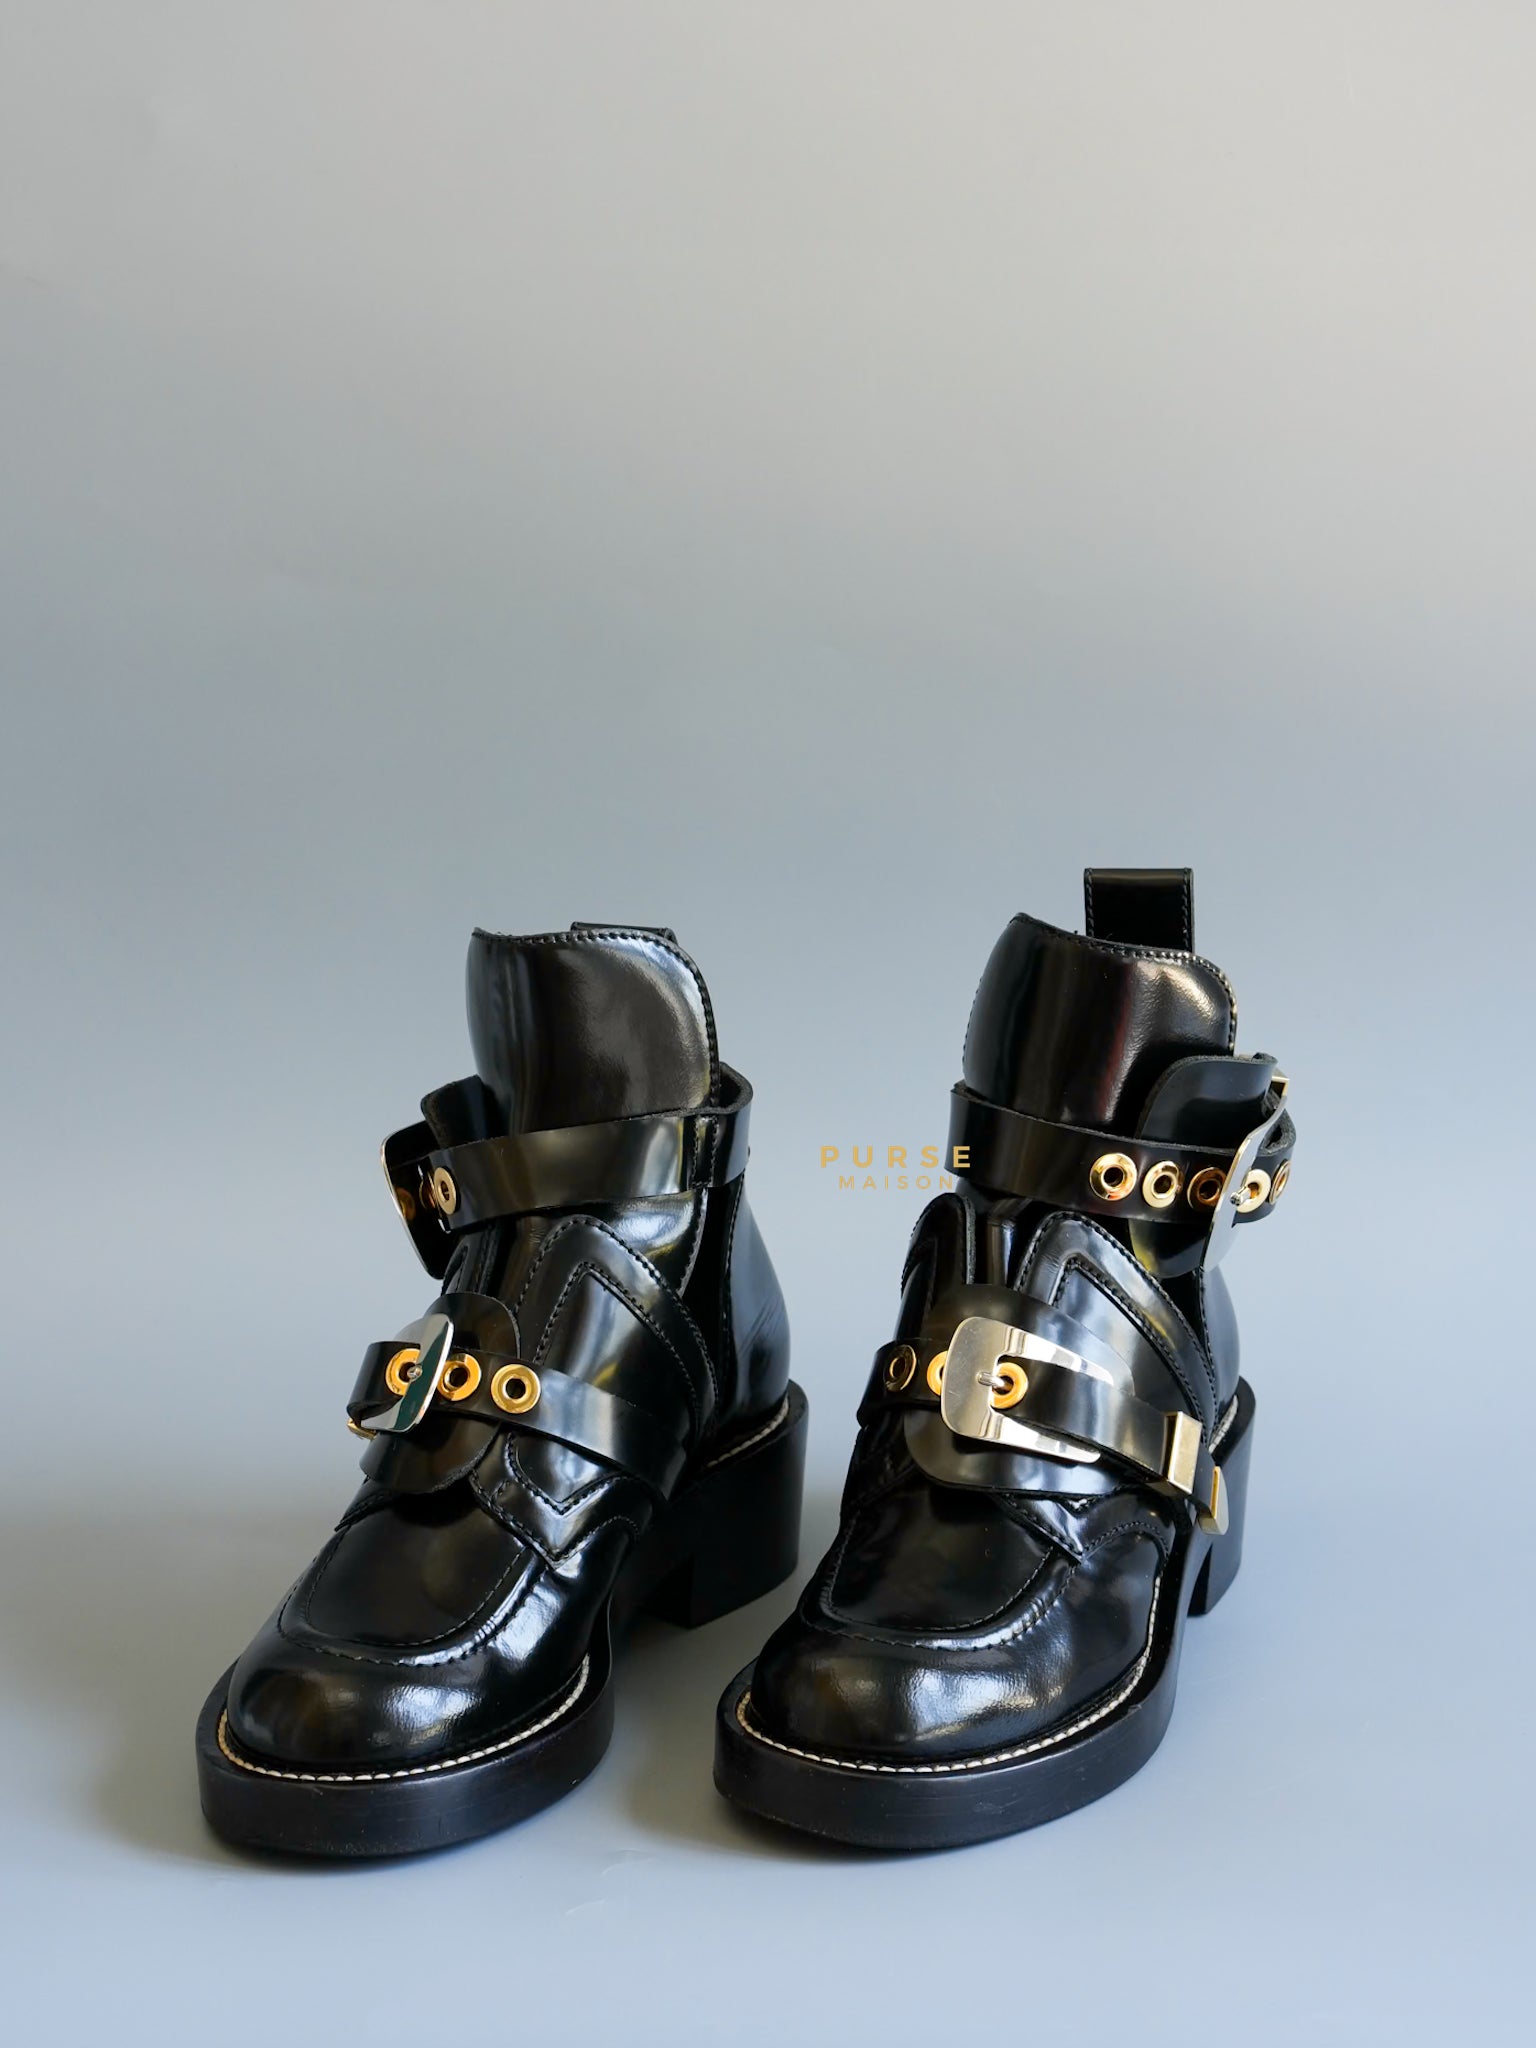 Cutout Buckle Ankle Boots in Black Leather Size 35 EU (23cm) | Purse Maison Luxury Bags Shop